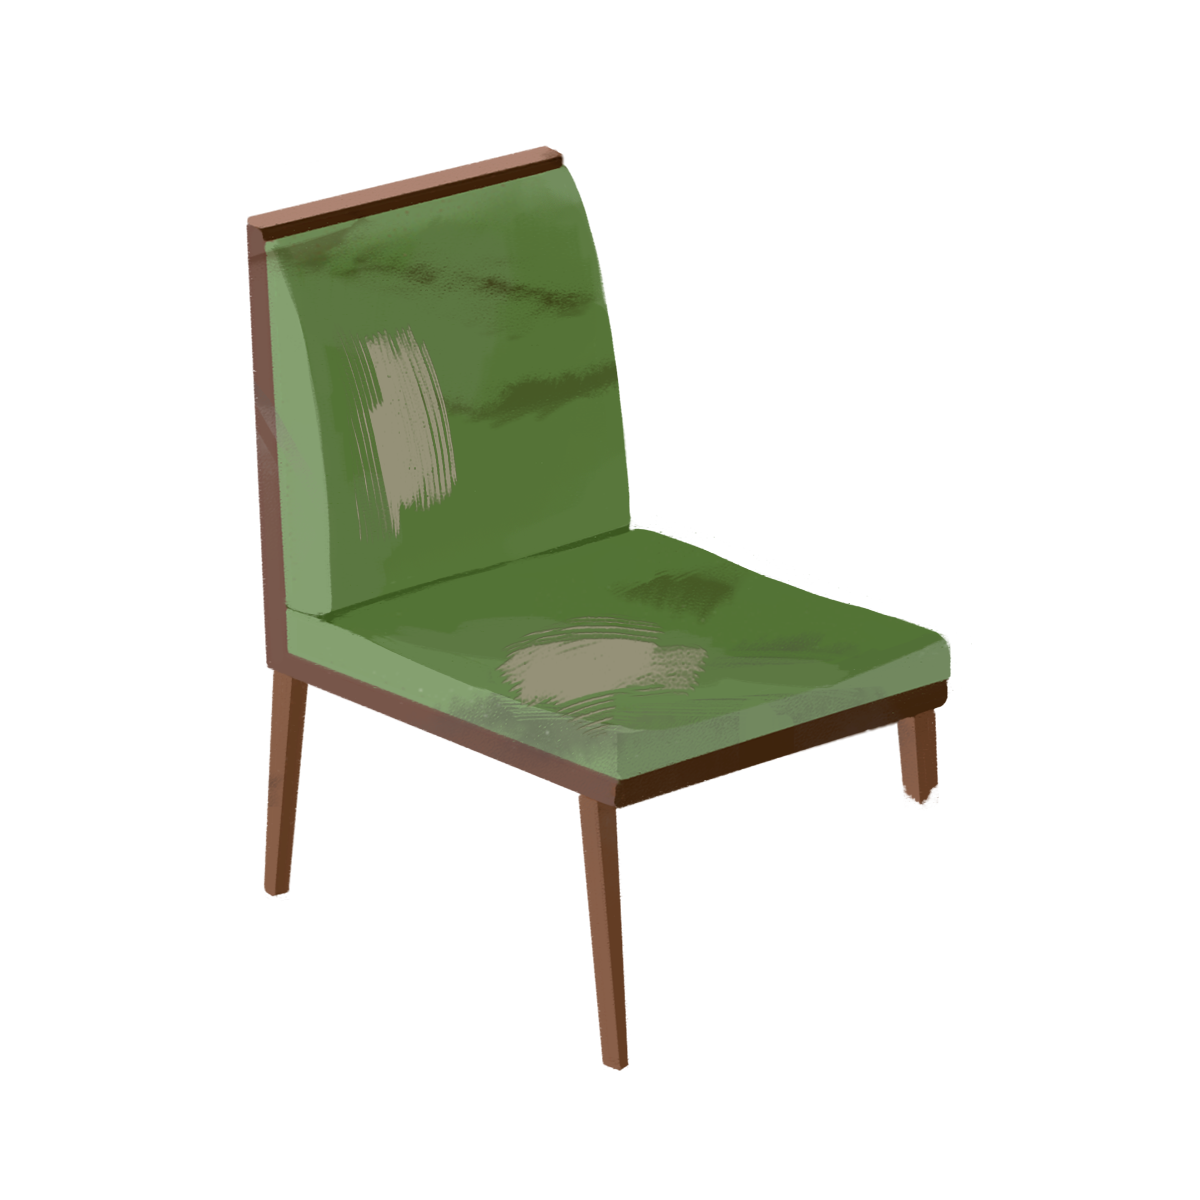 壊れた椅子 イス のイラスト エコのモト